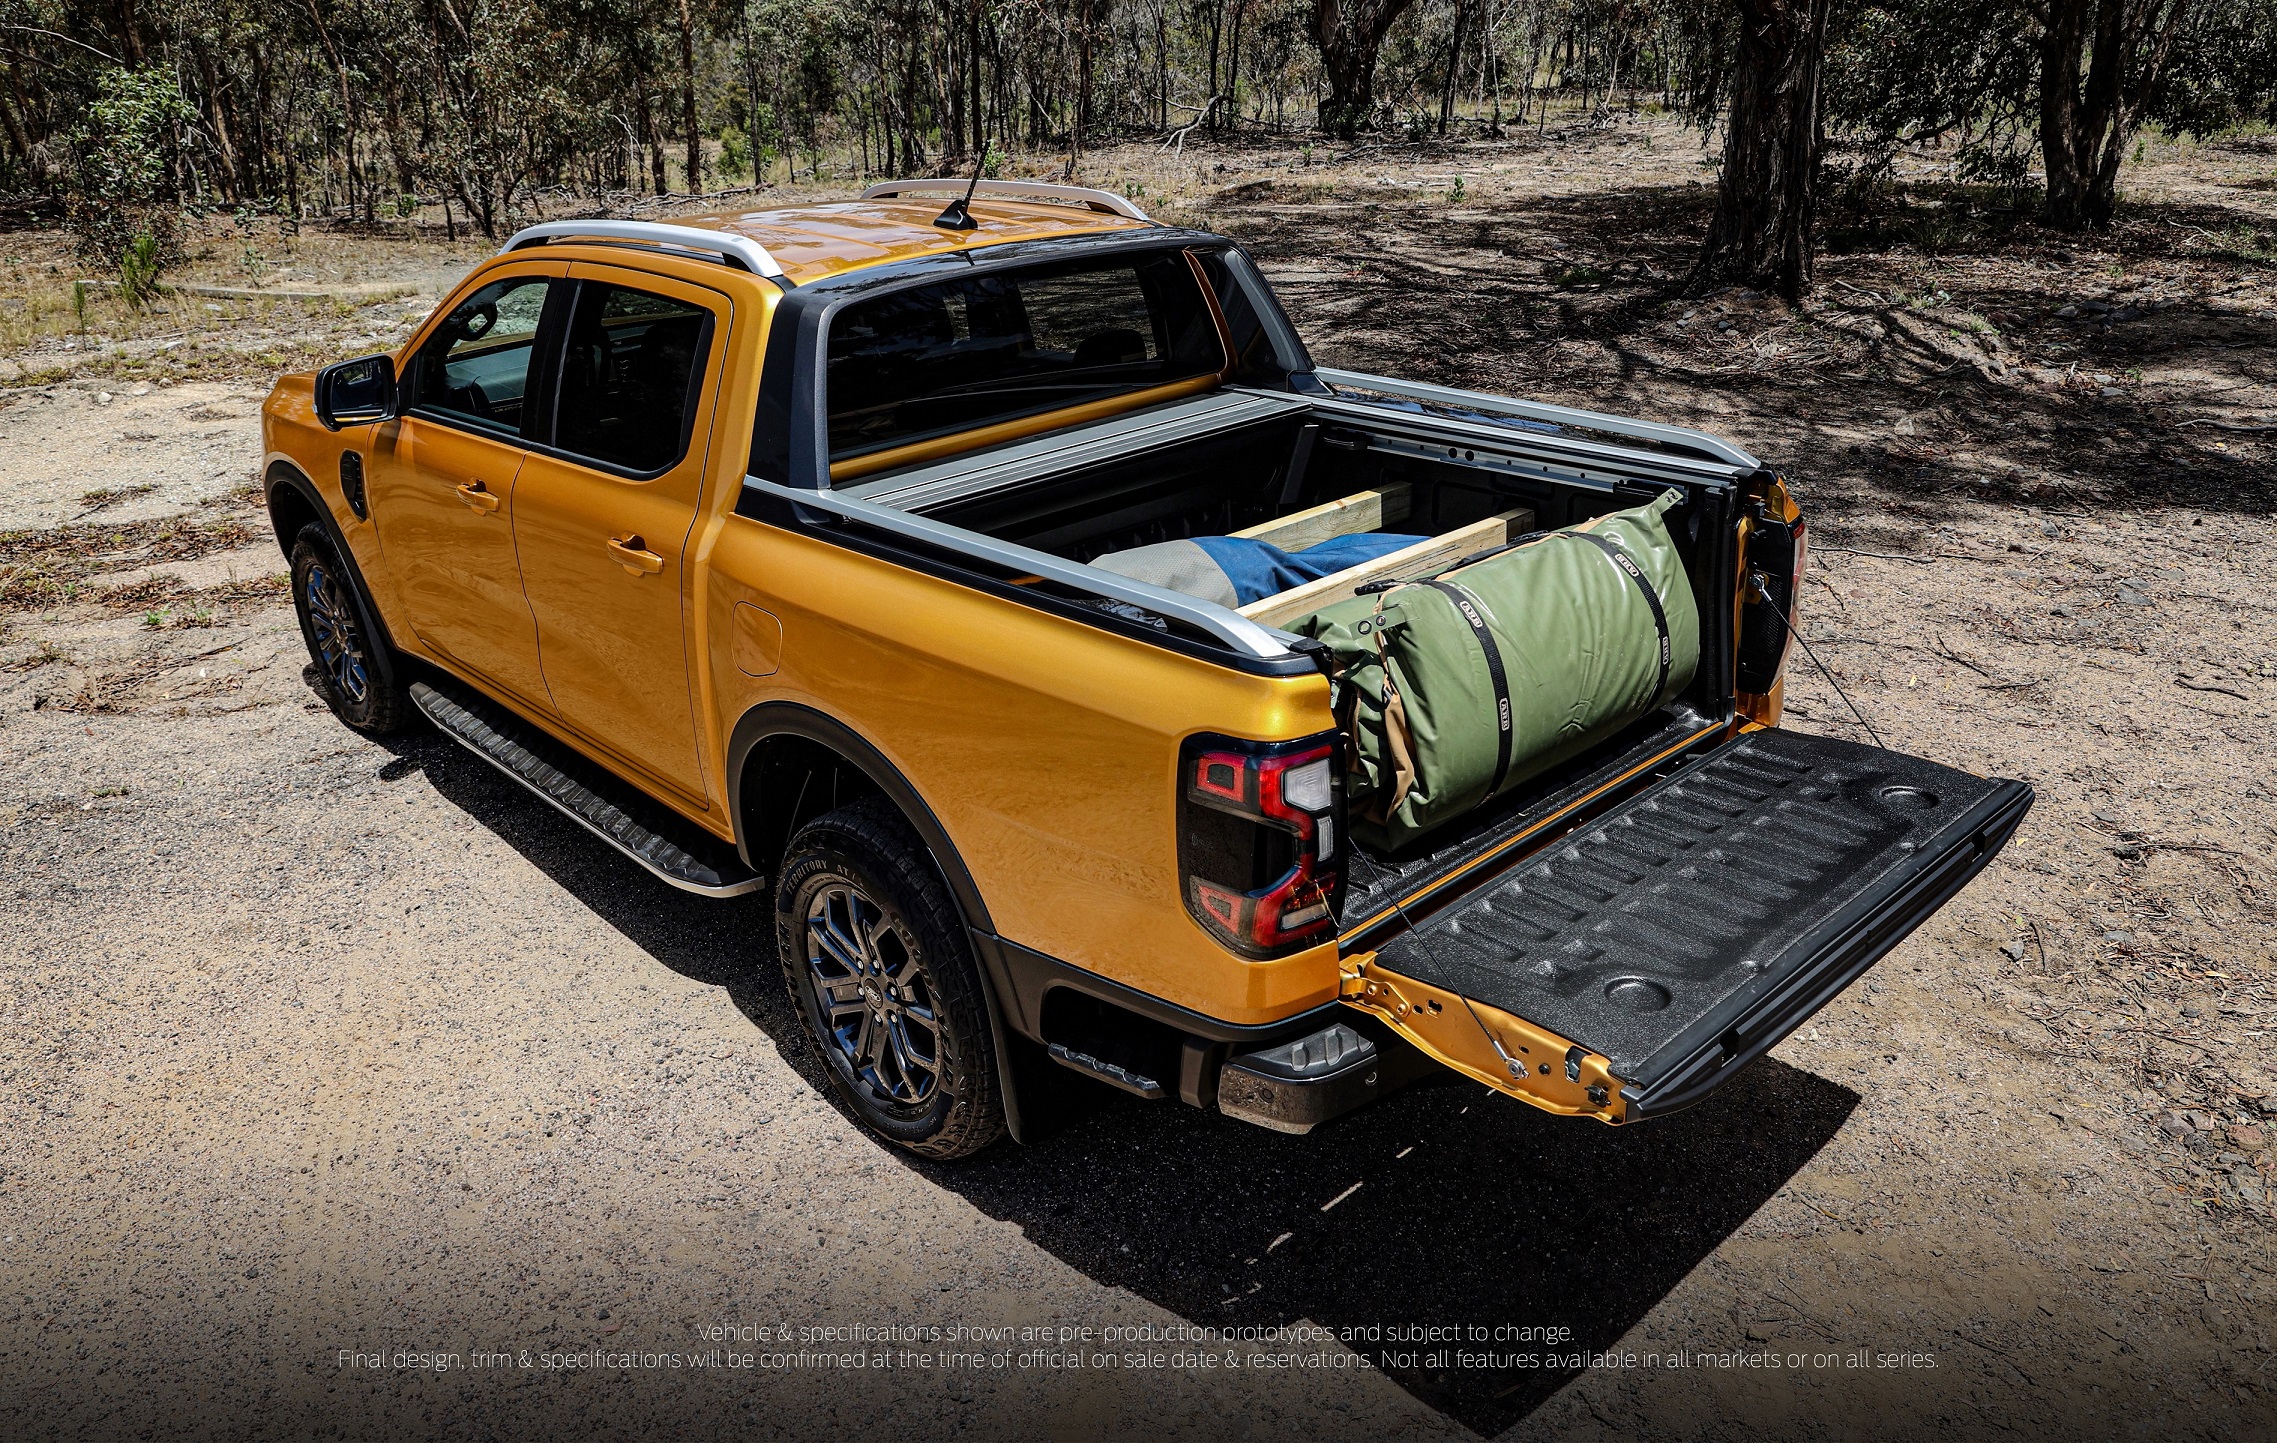 "Warum haben das nicht alle Pick-ups?" Neuer Ford Ranger bietet innovative und praktische Funktionen